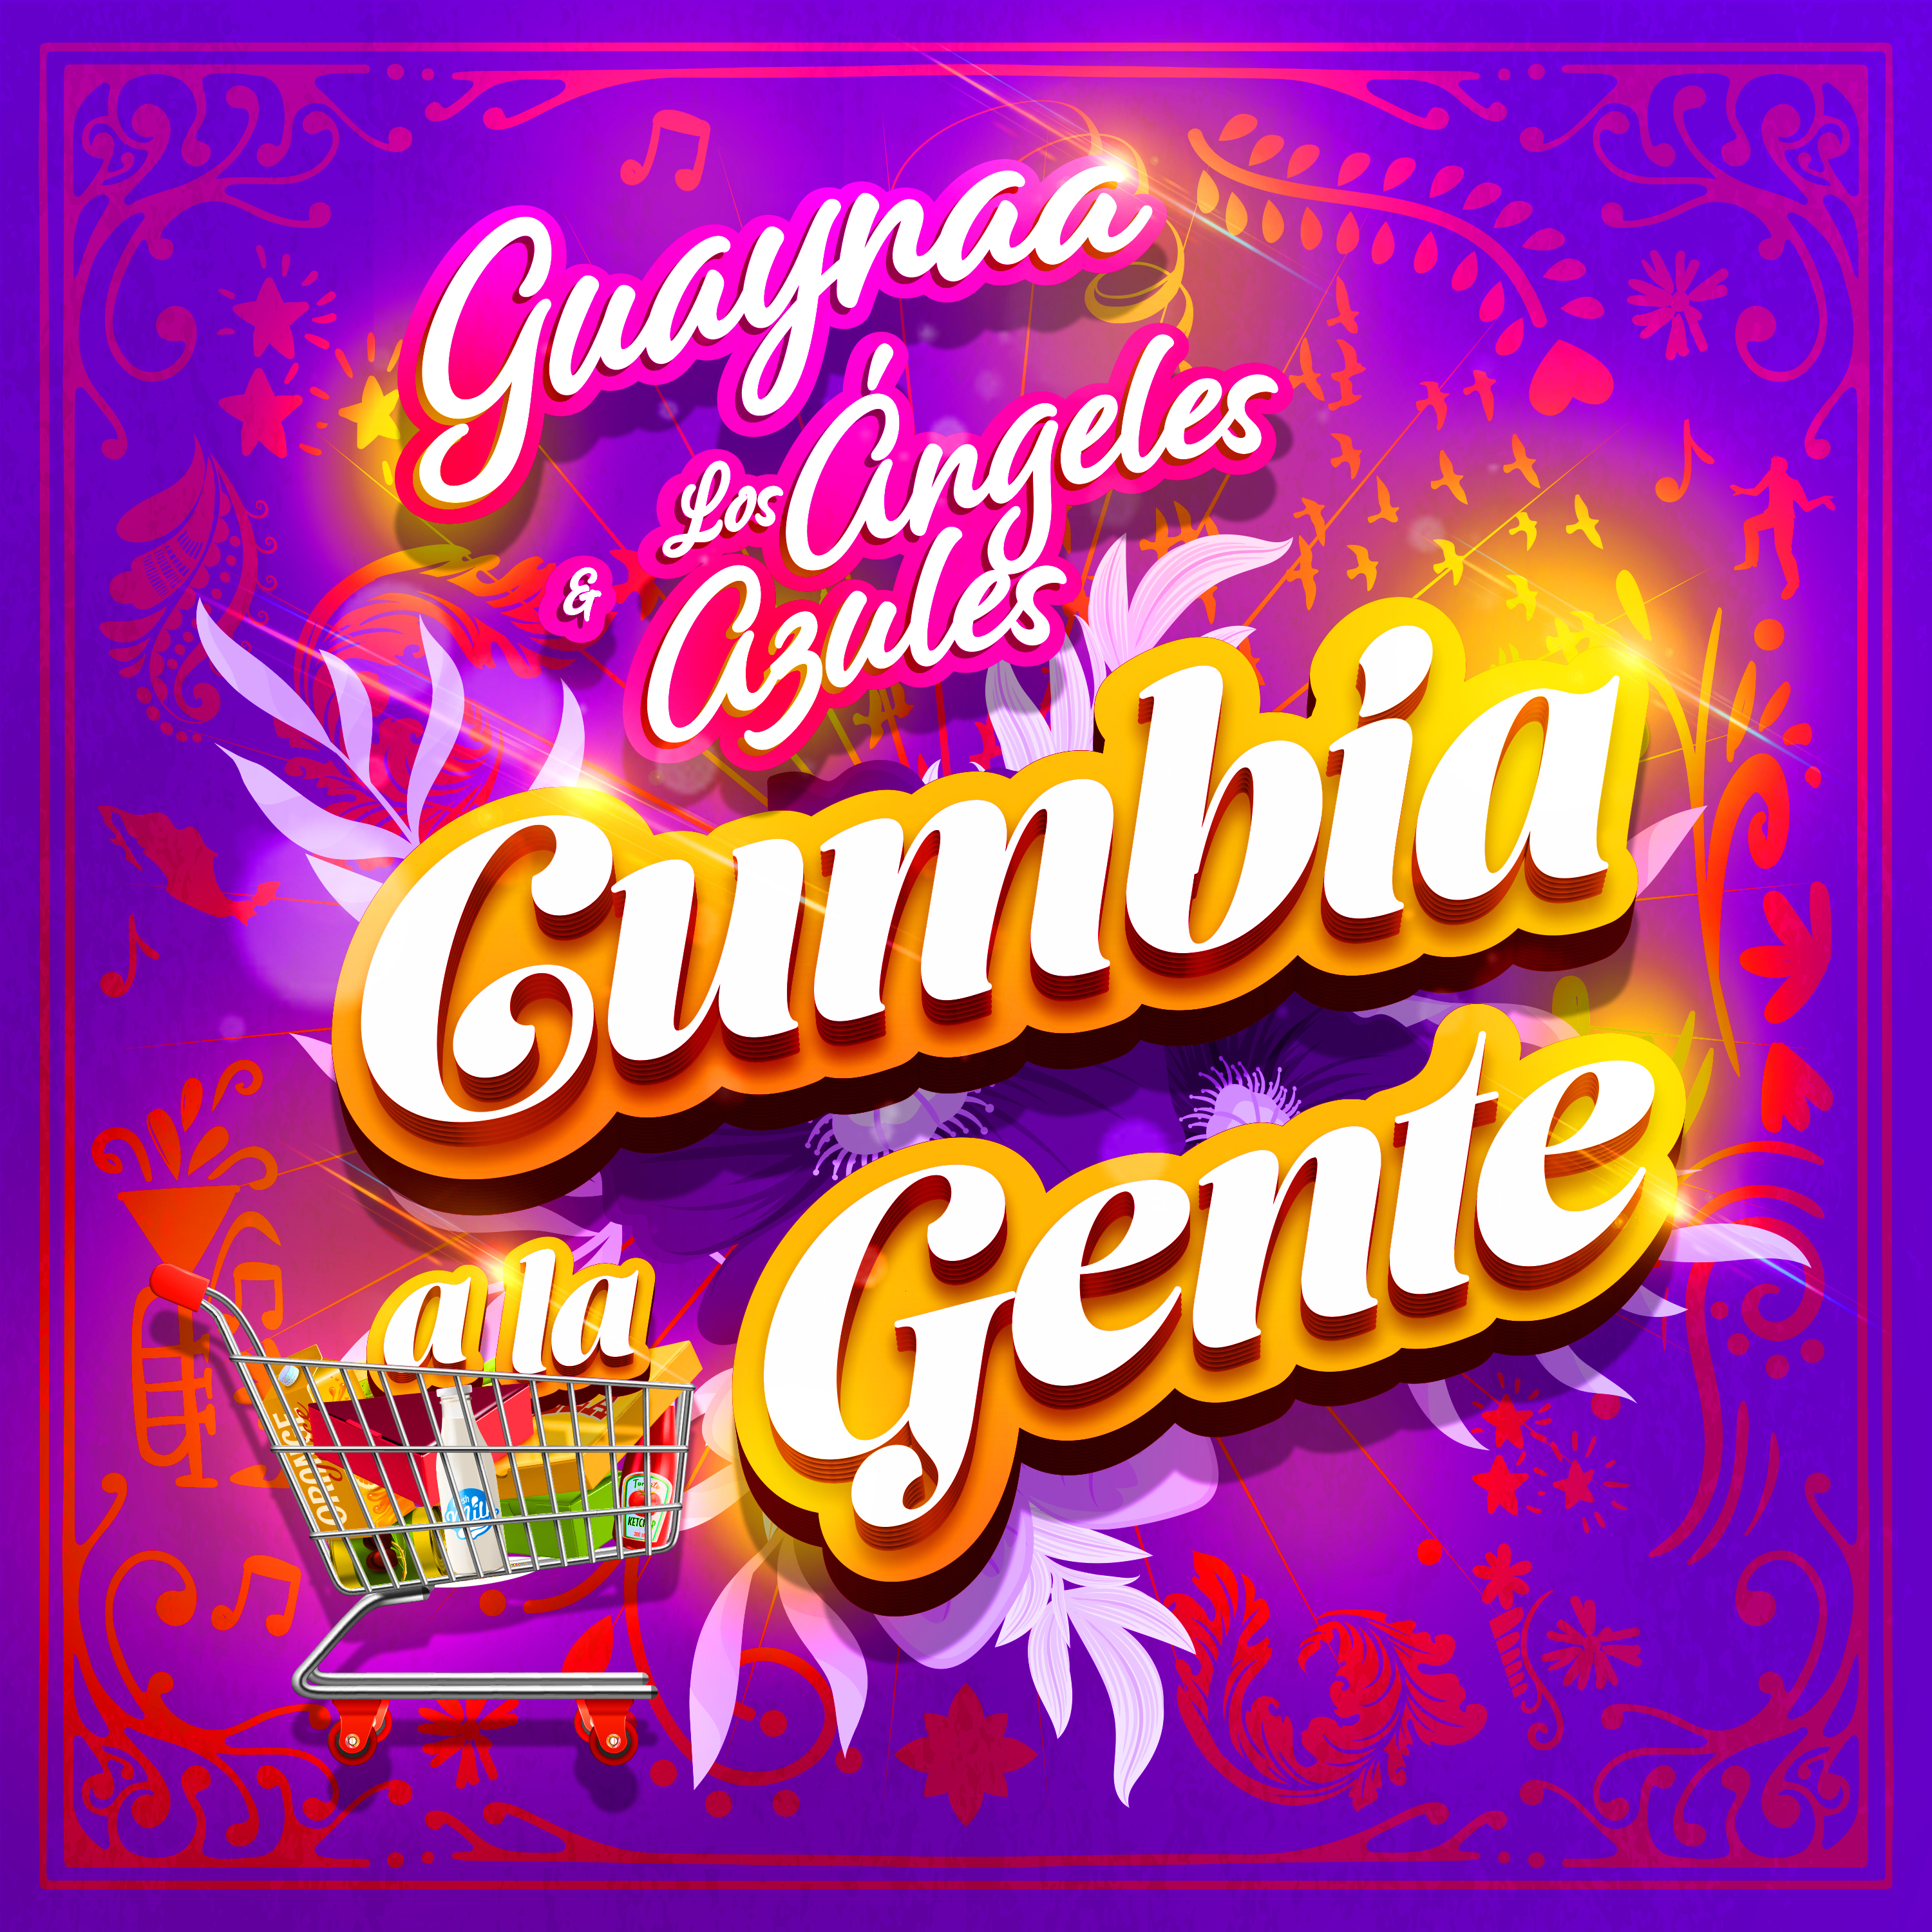 Guaynaa #1 en Colombia, México, Argentina, El Salvador y Guatemala con “Cumbia a la Gente”  junto a los Angeles azules – @Guaynaa_